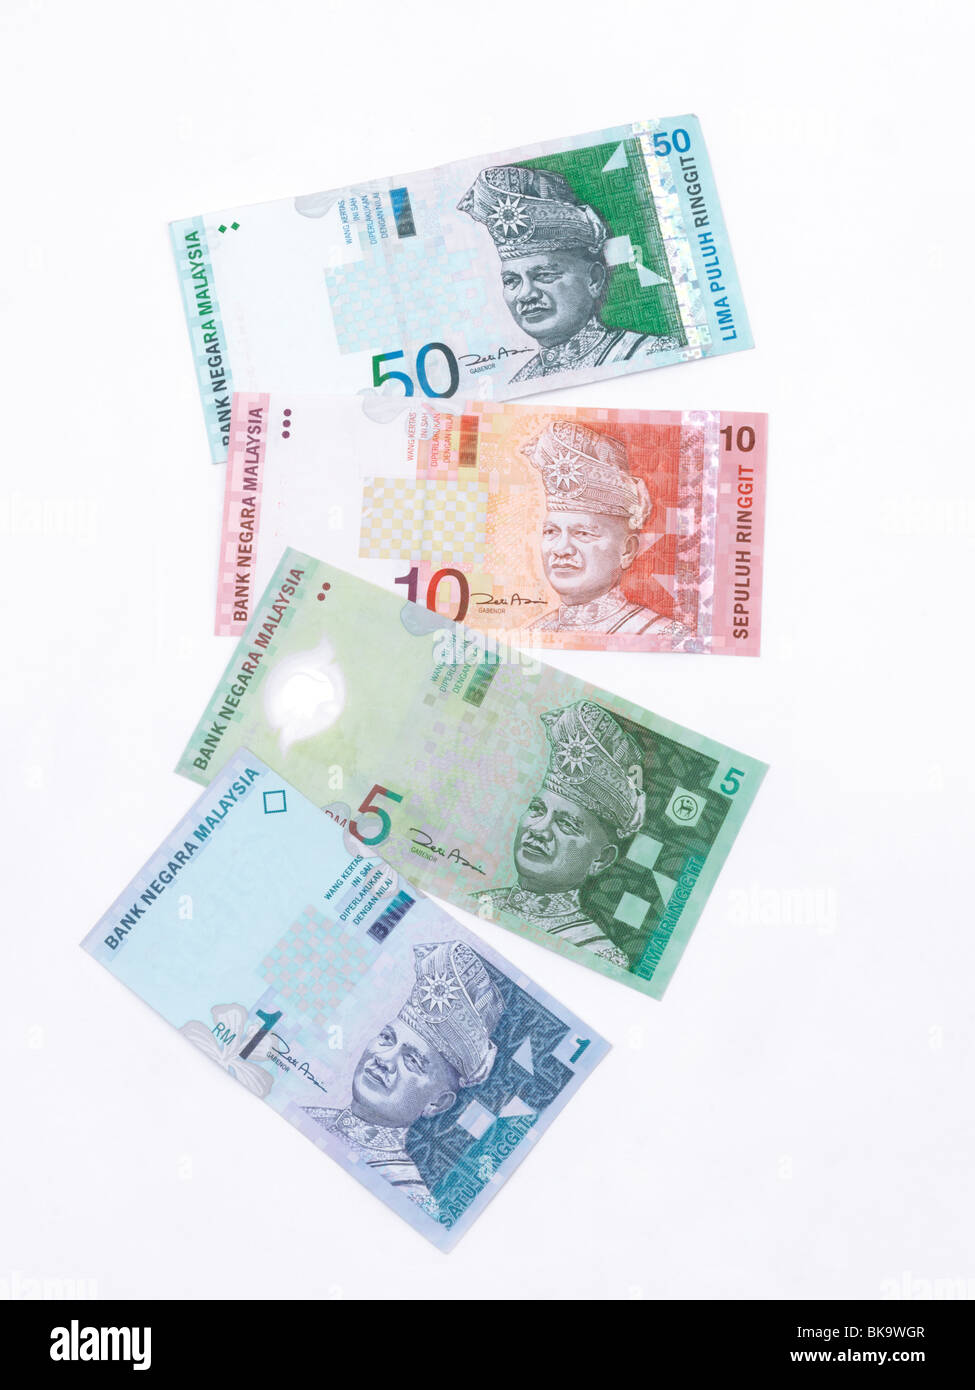 Malaysian Banknotes 50, 10, 5 and 1 Ringgit Stock Photo